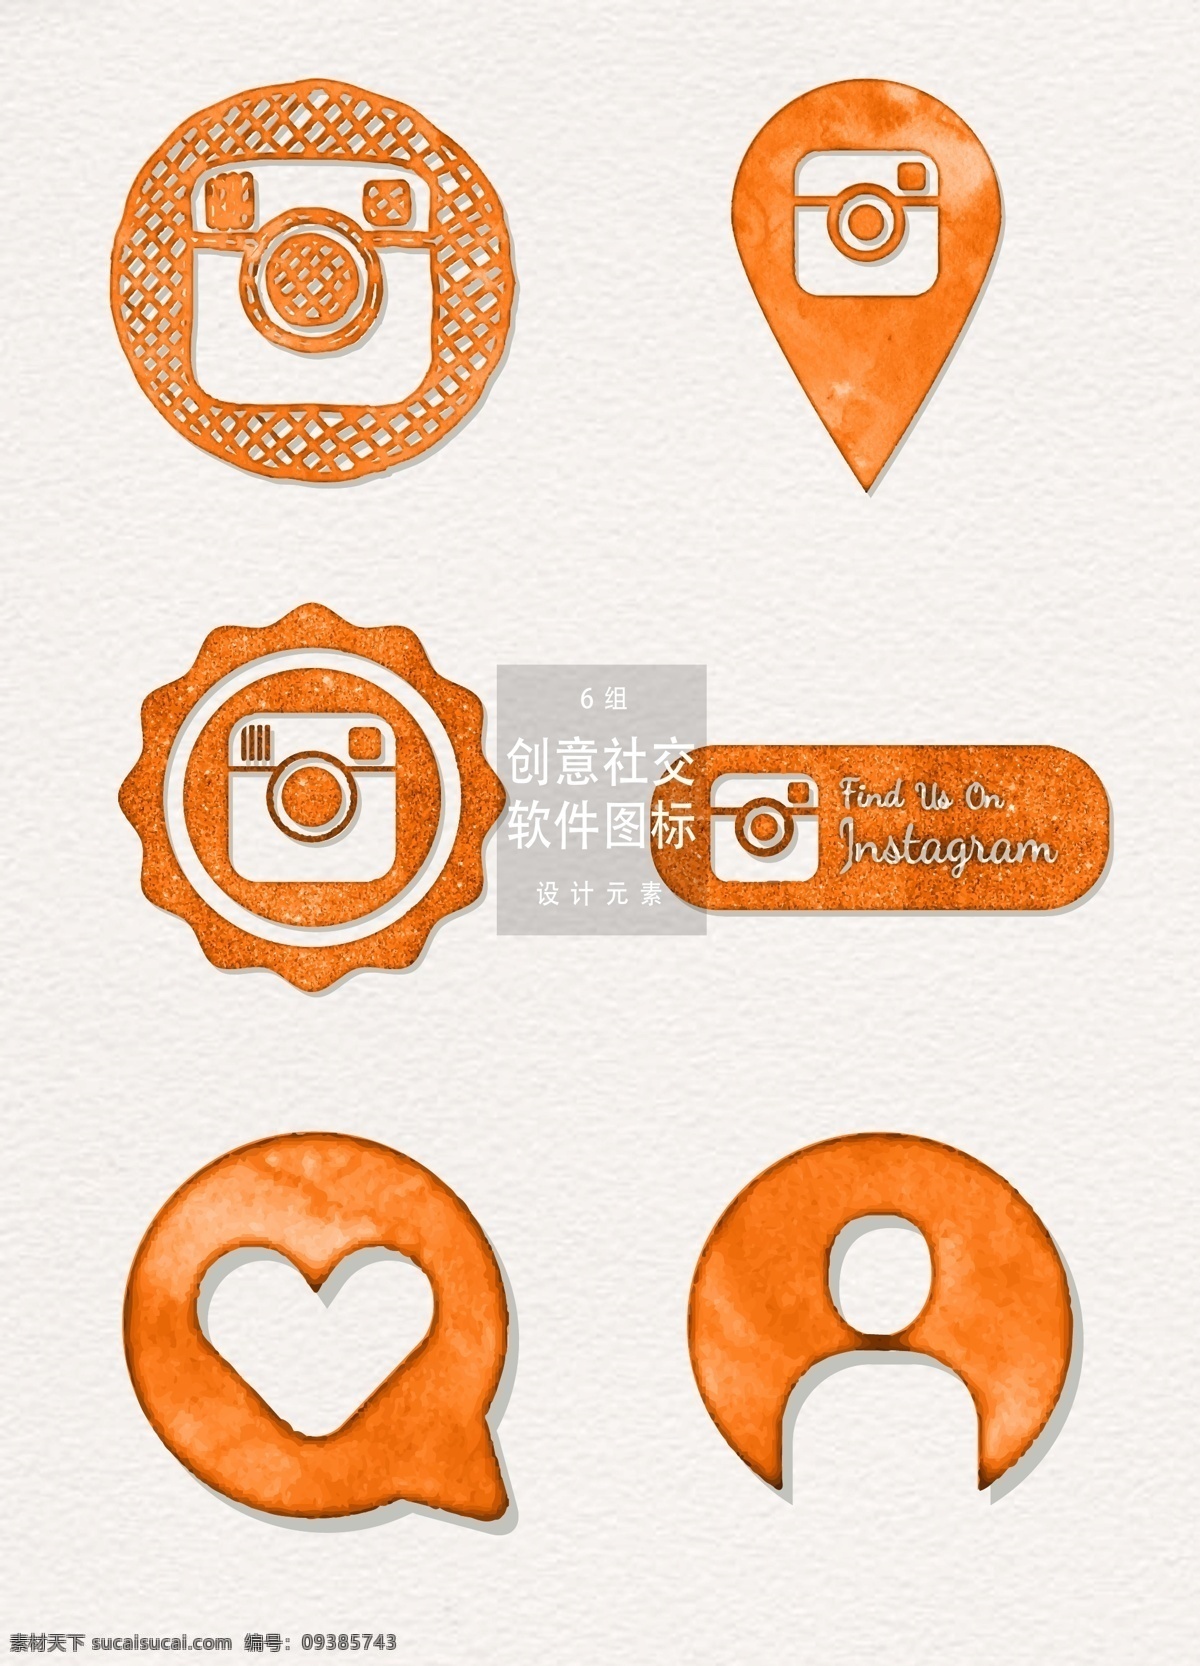 橙色 水彩 创意 社交 软件 图标 软件图标 图标设计 app图标 社交软件图标 社交软件 水彩图标 手绘图标 矢量水彩